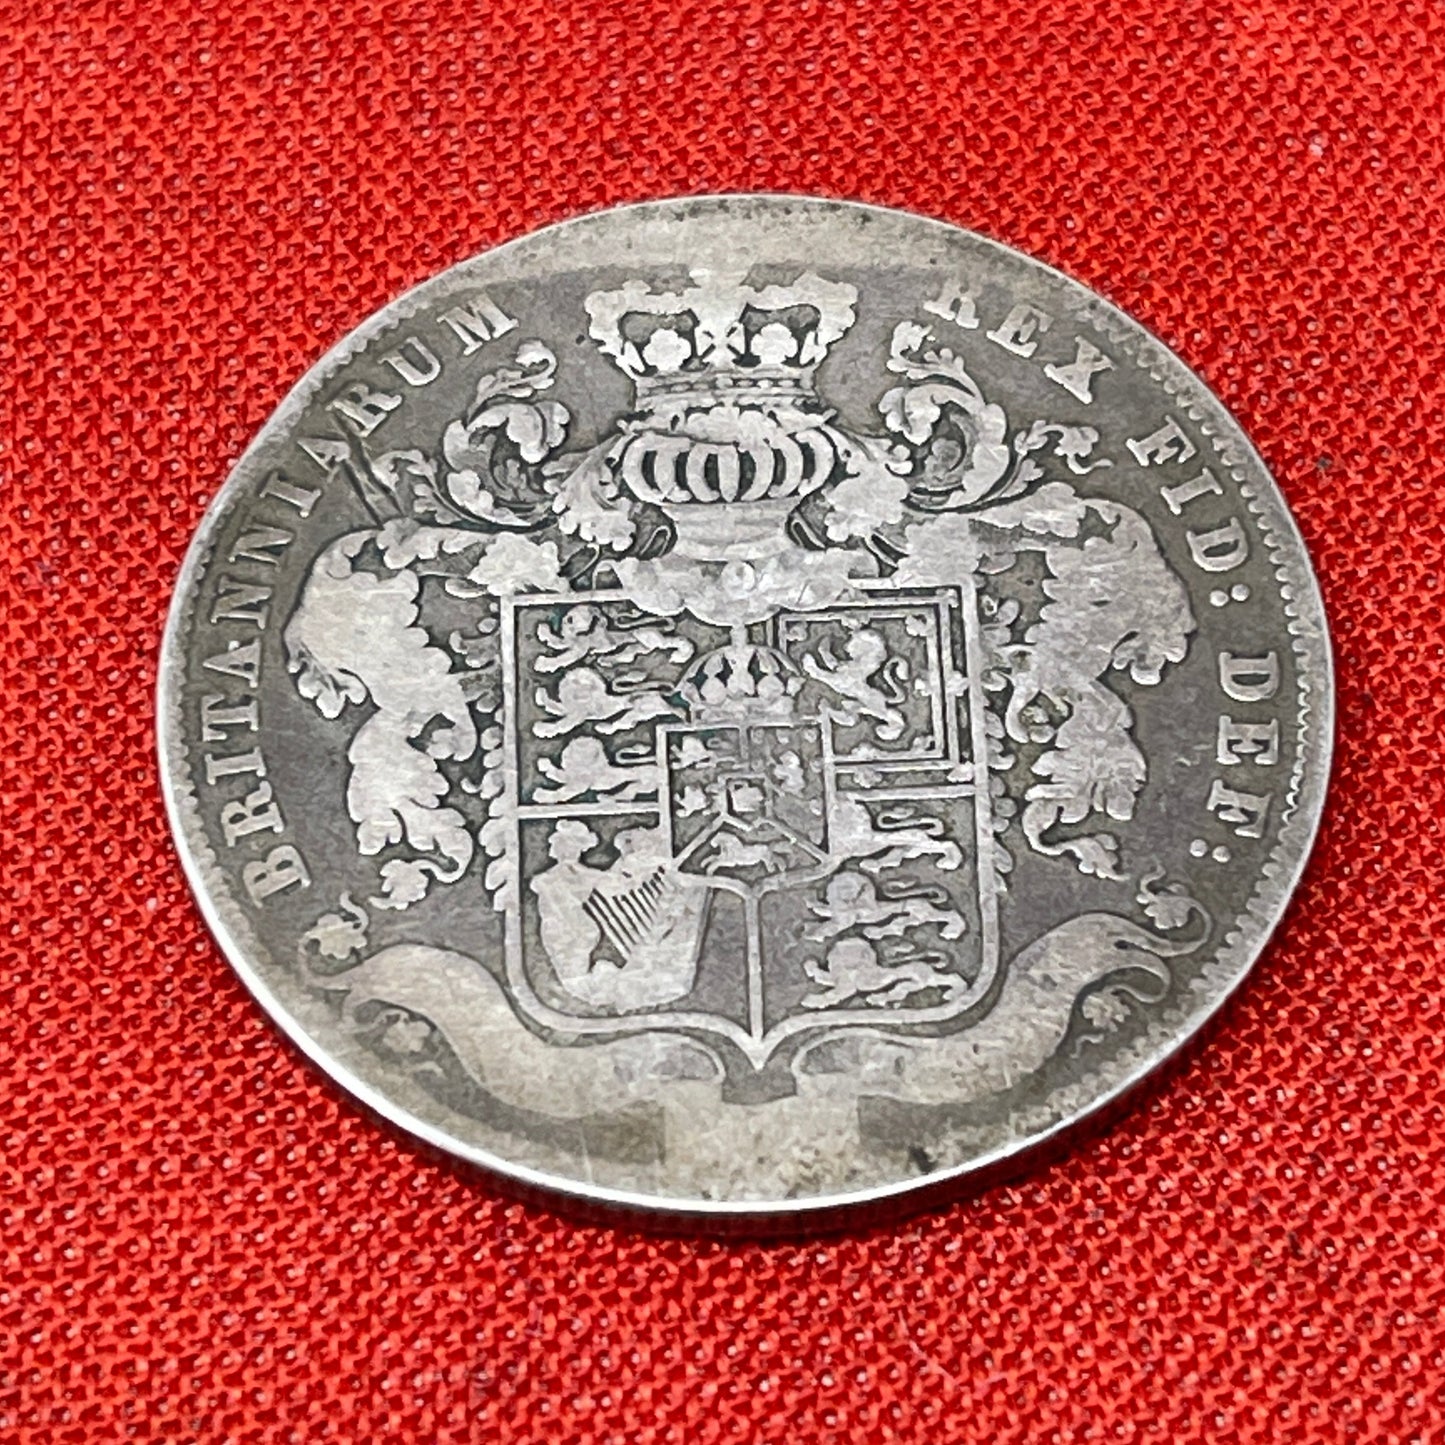 King George IV 1825 Half Crown